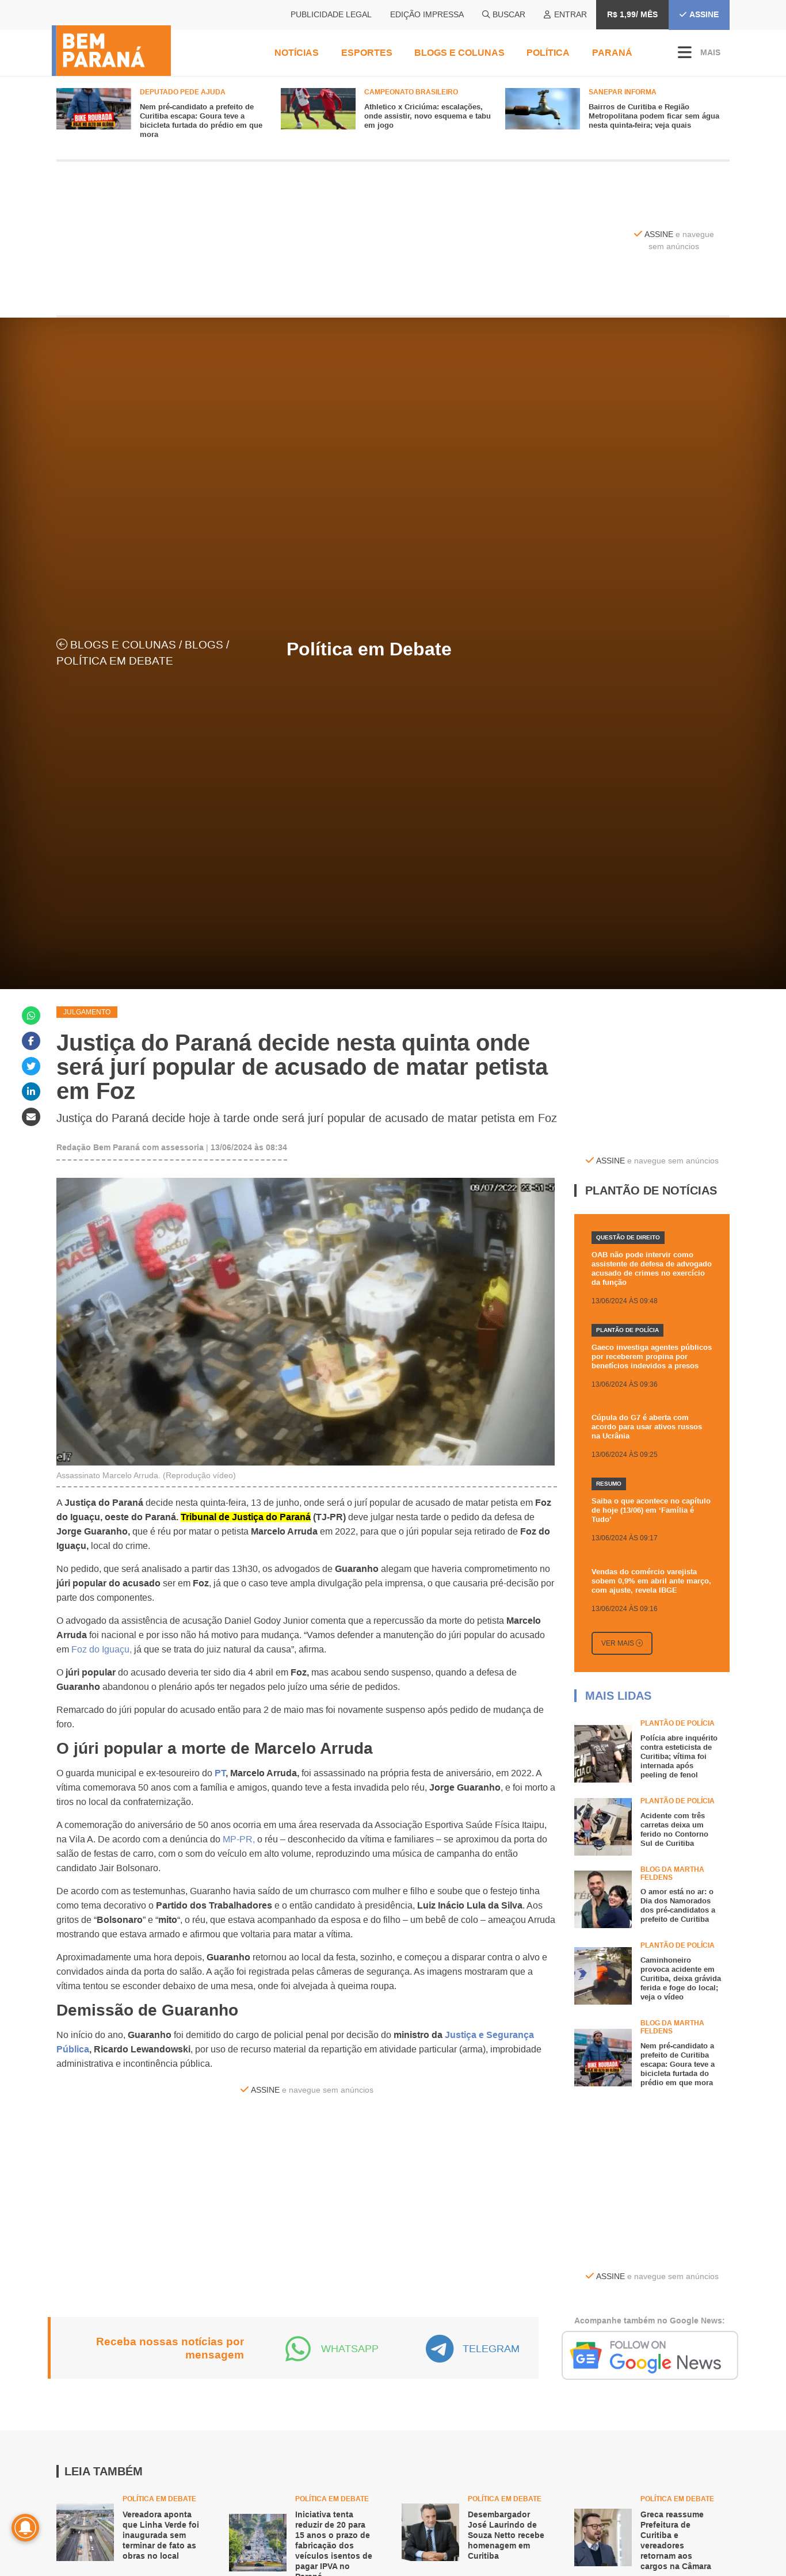 Justiça do Paraná decide nesta quinta onde será jurí popular de acusado de matar petista em Foz